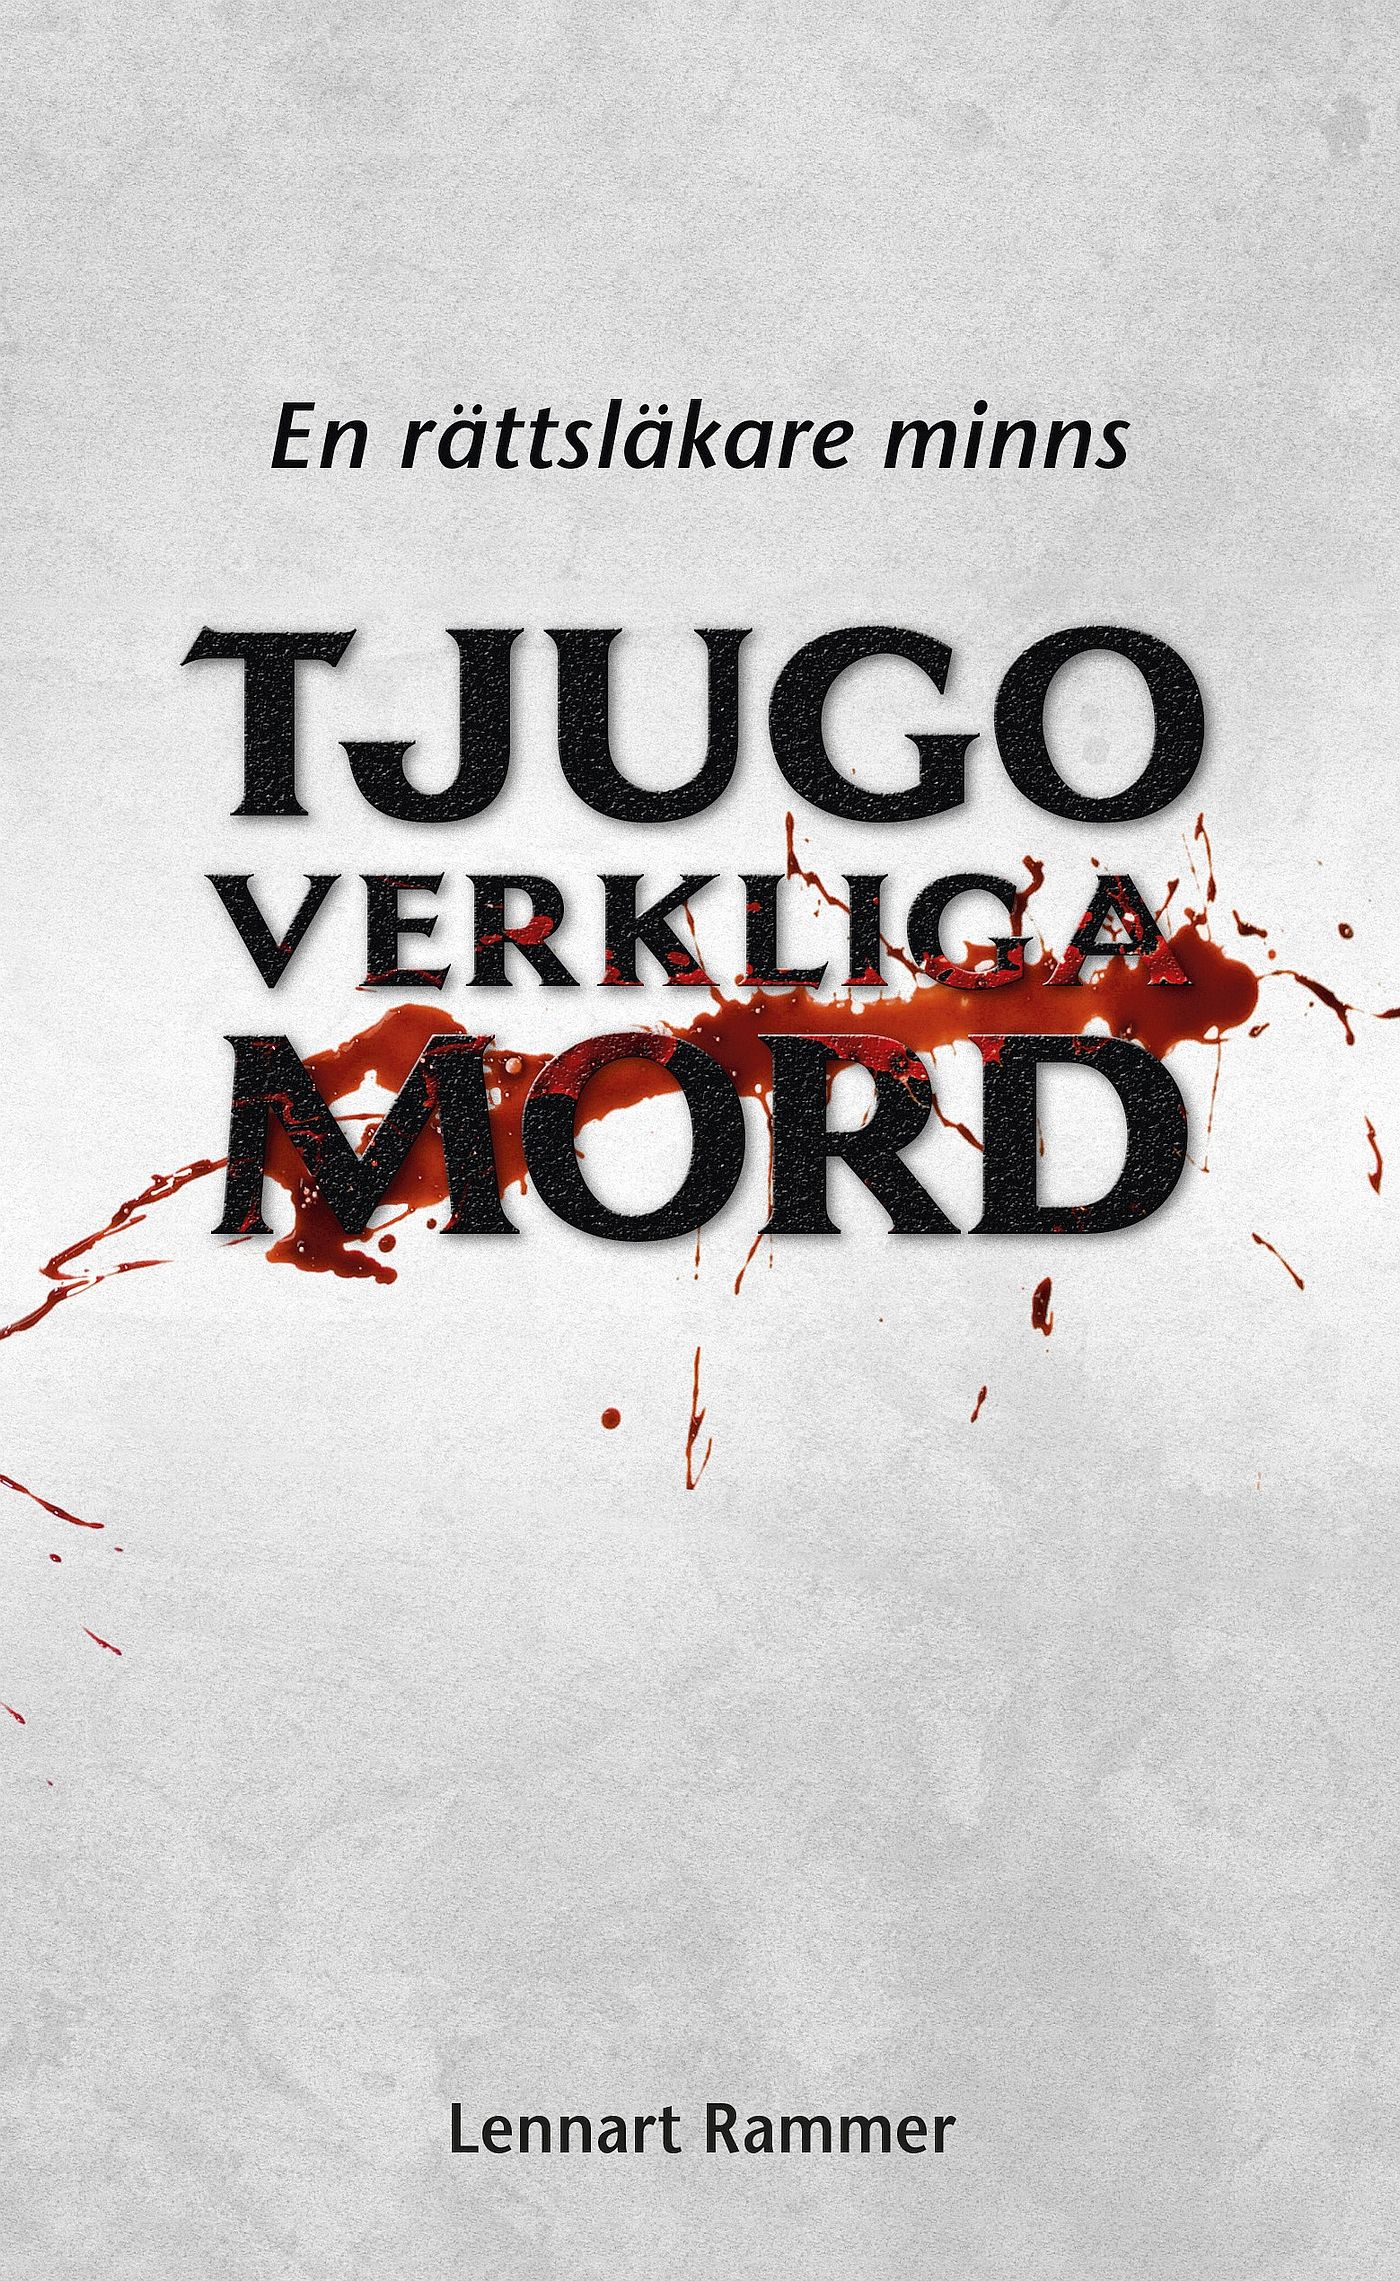 Tjugo verkliga mord - En rättsläkare minns, e-bok av Lennart Rammer